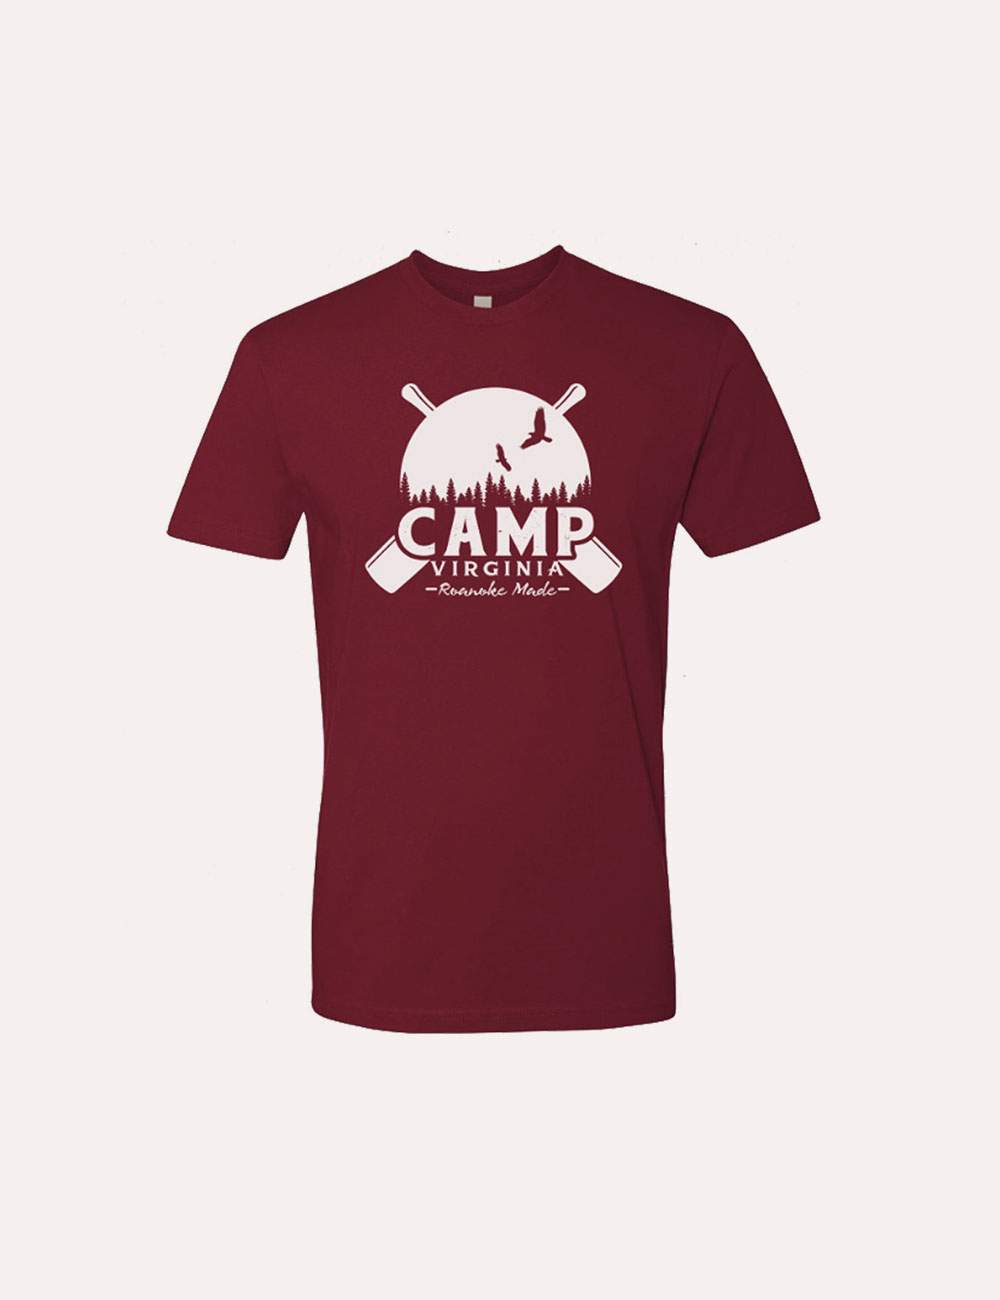 Roanoke Made - Merch - Camp Roanoke - T-Shirt